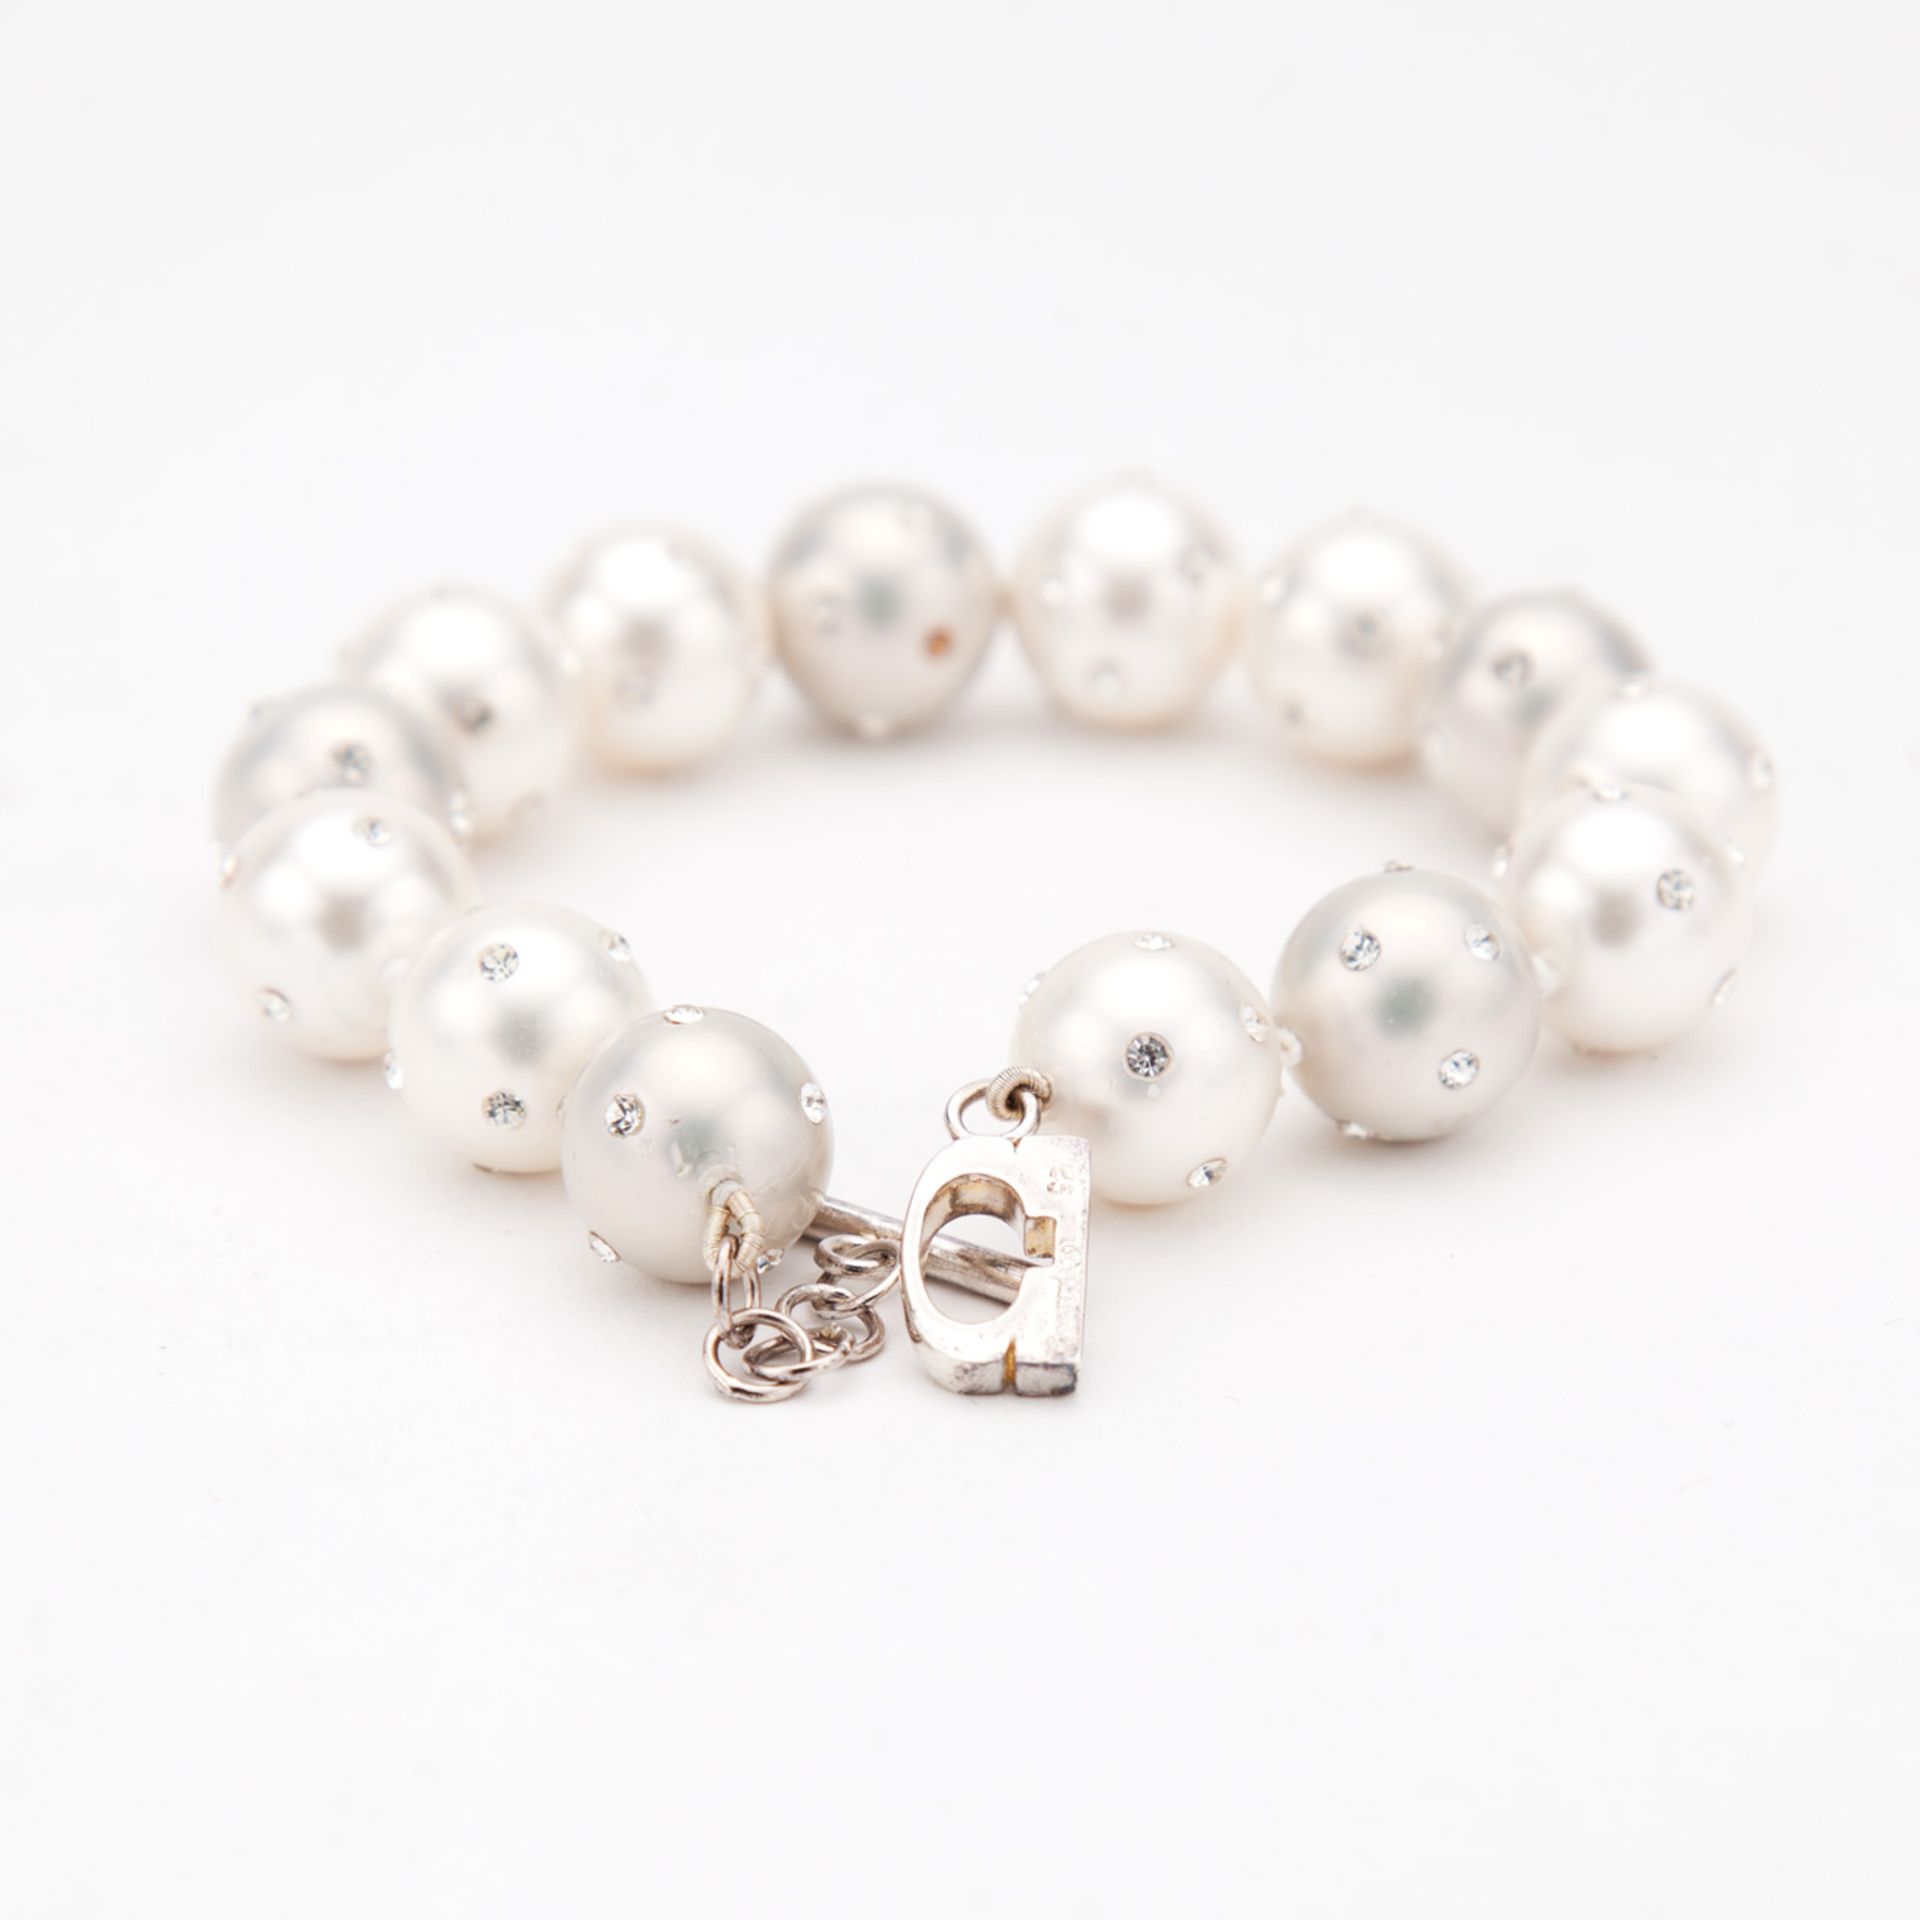 CZ Studded Pearl Bracelet - Bracelet Length 9" - Image 2 of 2